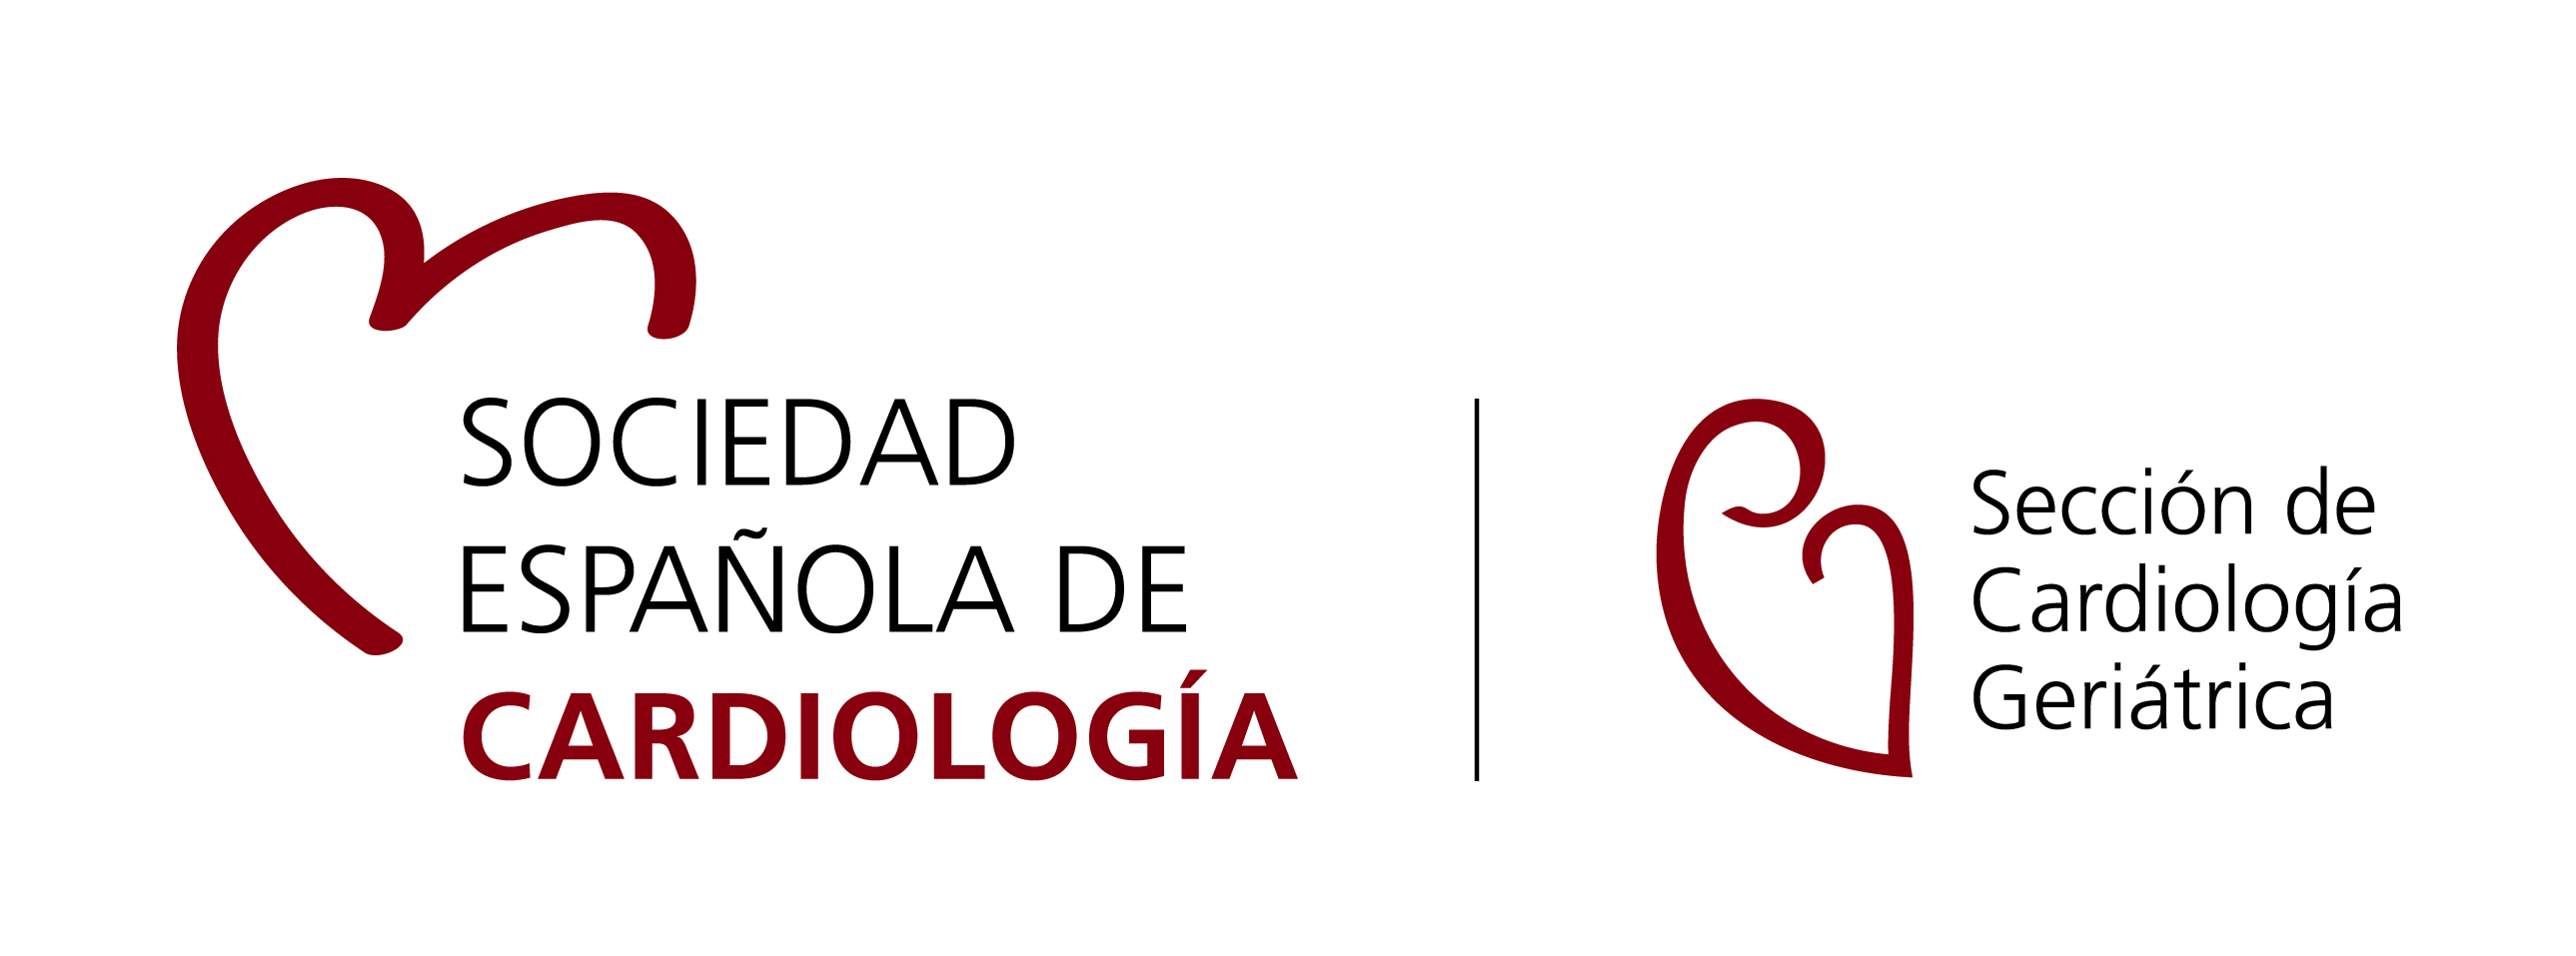 Sociedad Española de Cardiología. Sección de Cardiología Geriátrica